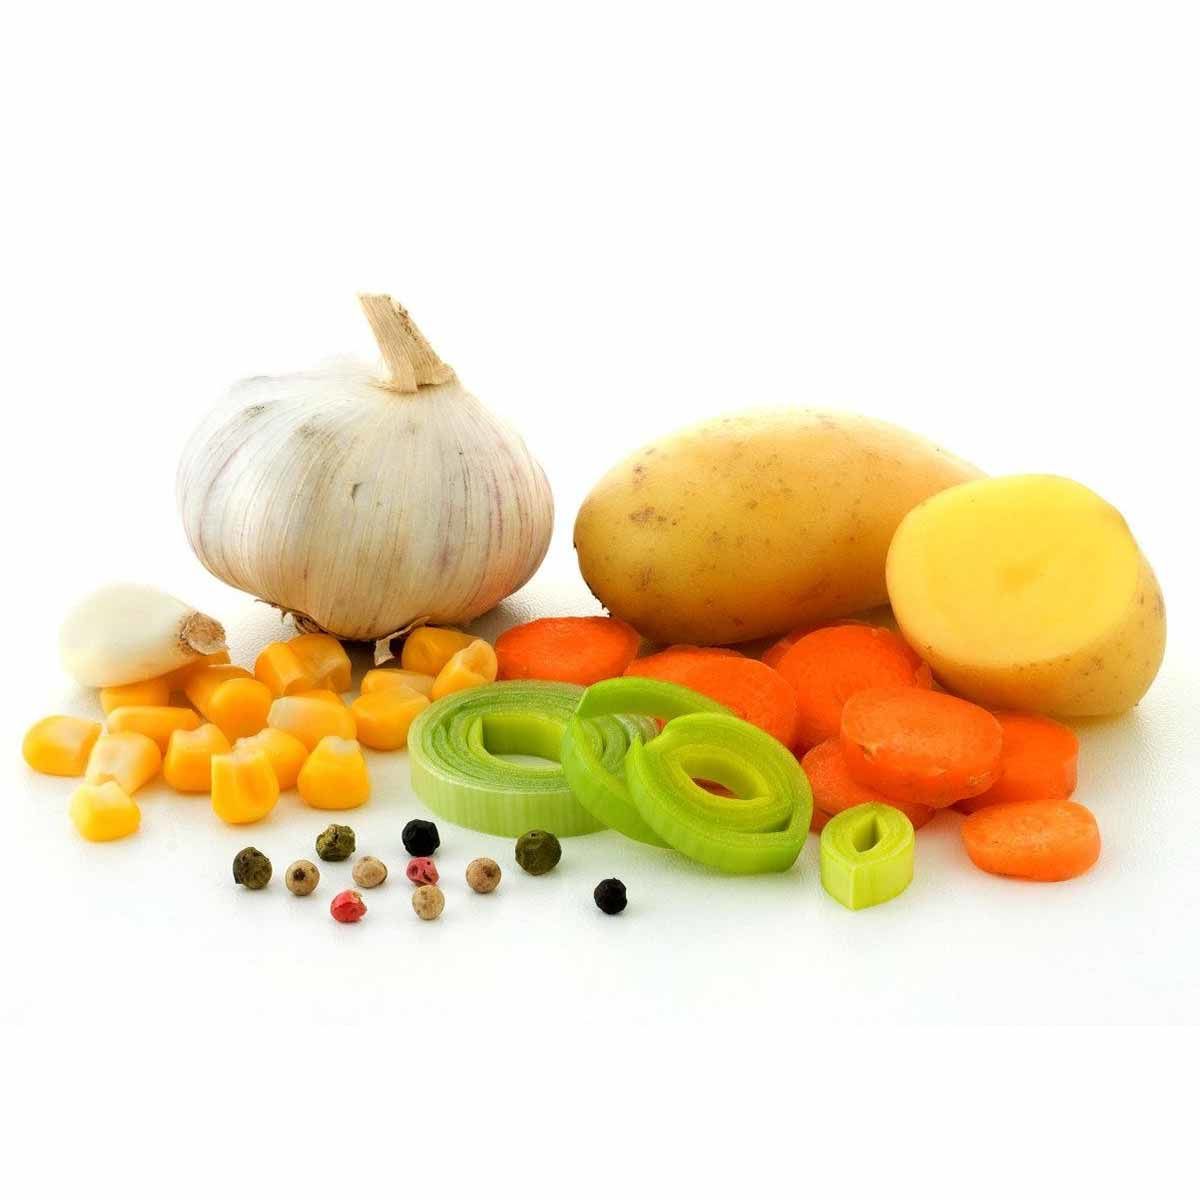 Ingrédients purée aux légumes lyophilisée